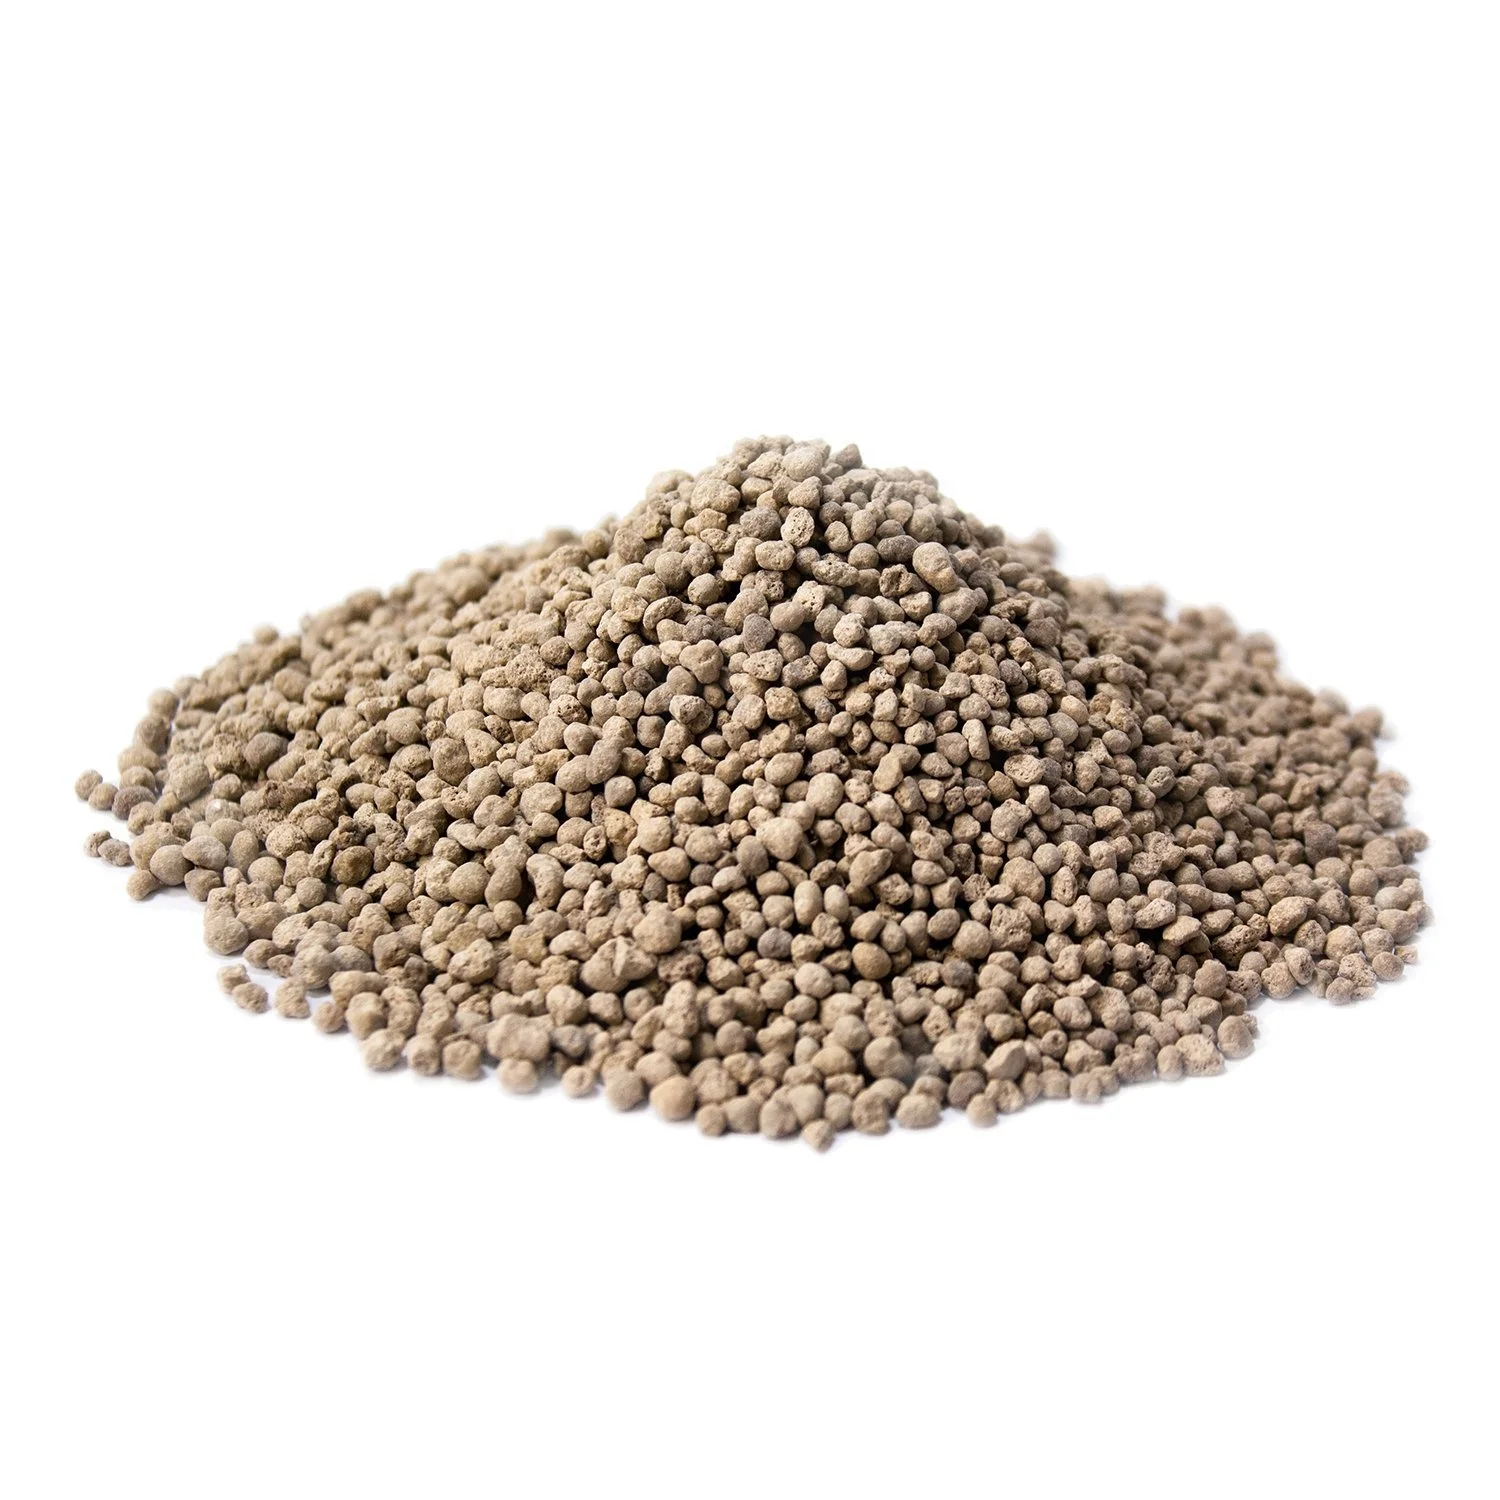 Single Super Phosphate Agricultural Fertilizer Powdered Granular Superphosphate